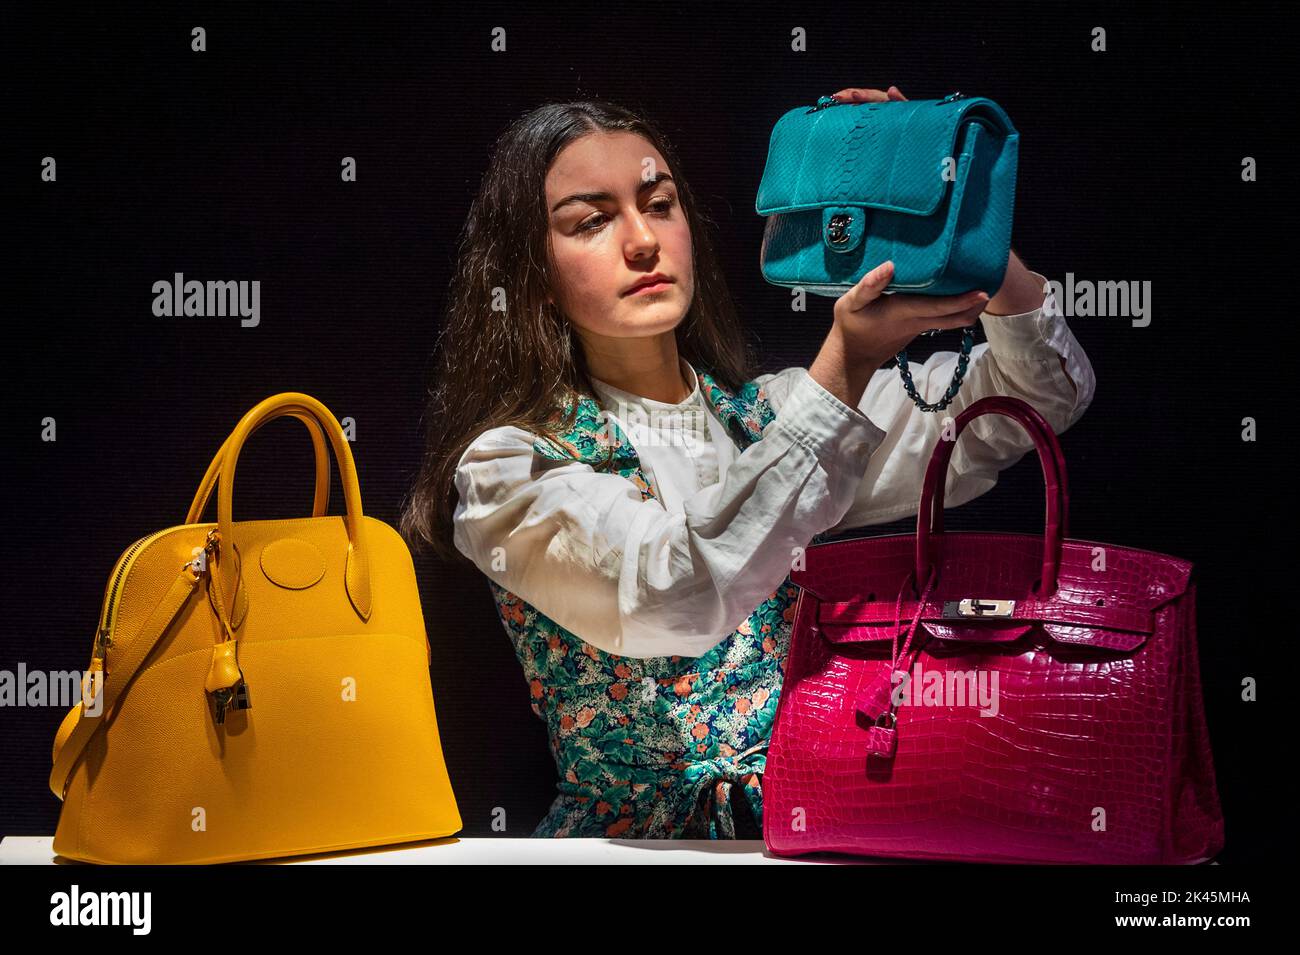 Bonhams, London, UK. 16 April 2021. Designer handbags and travel